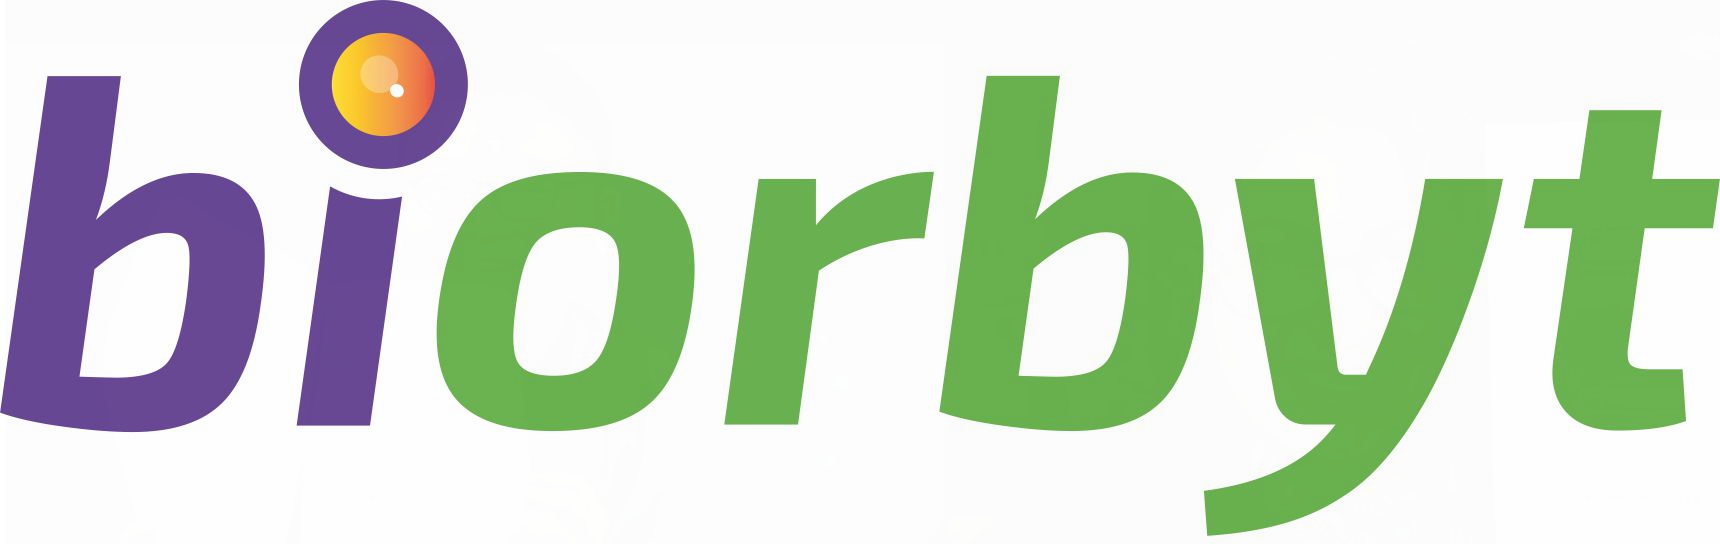 biorbyt summus res logo-nullus strapline